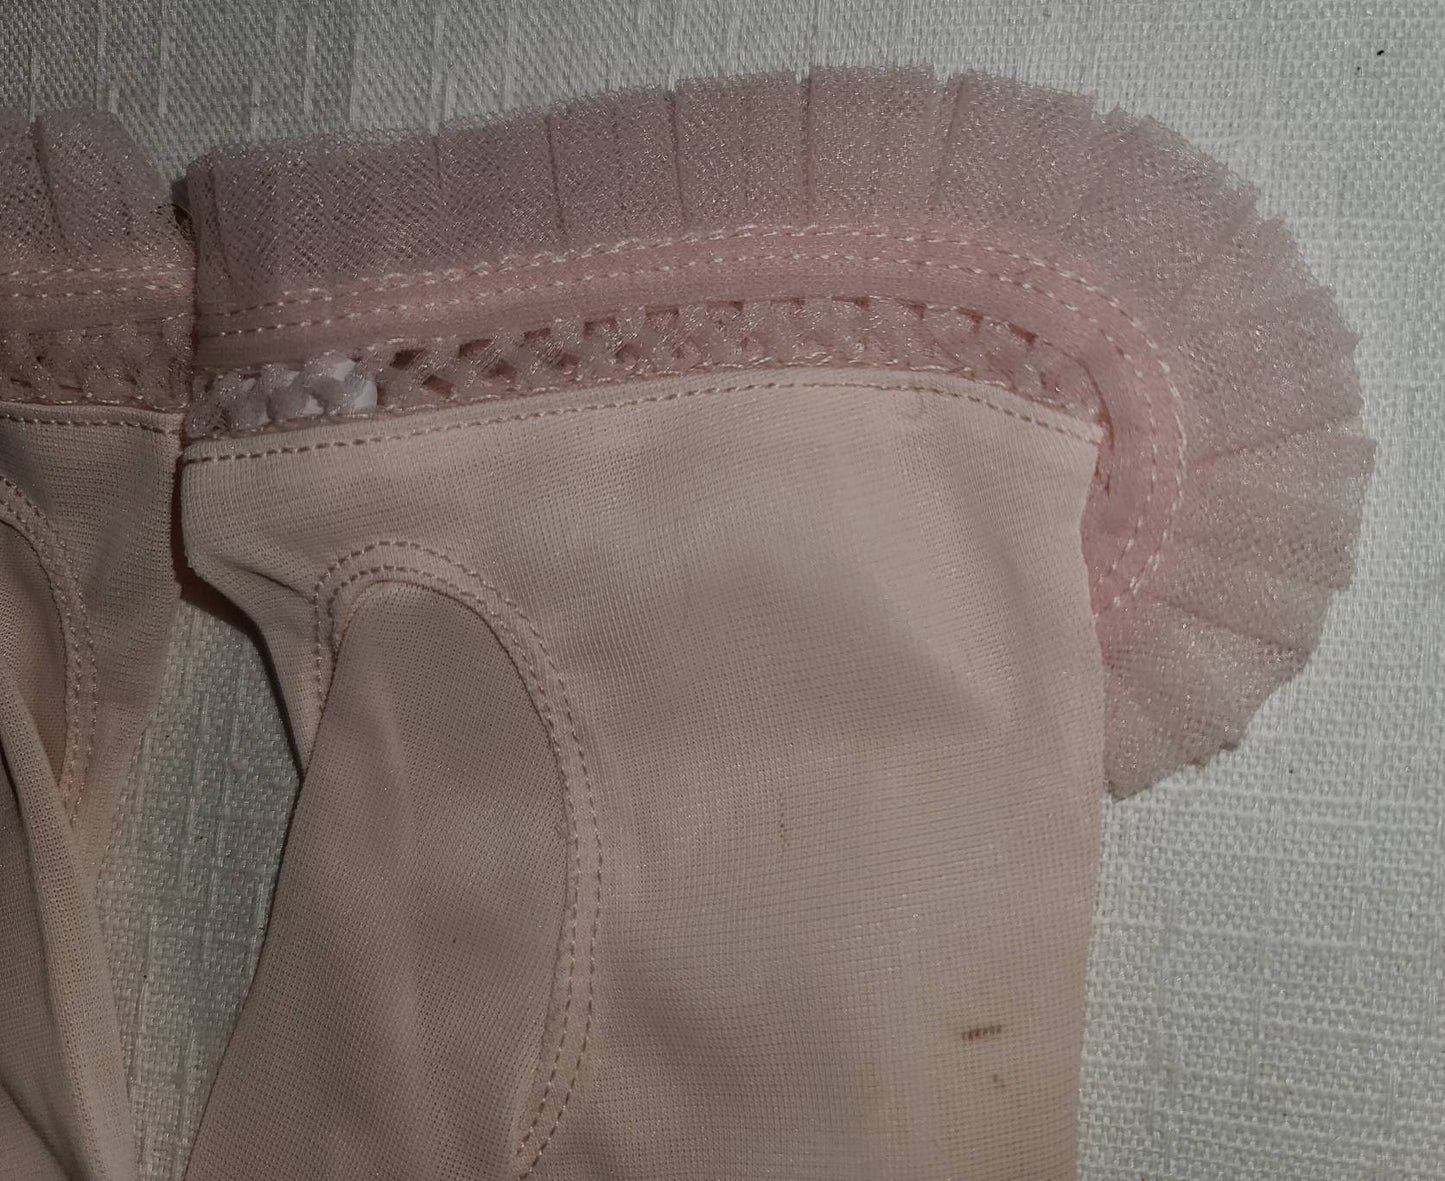 Vintage 1950s Gloves Semi Sheer Light Pink Nylon Gloves Pleats Ruffles Rockabilly 7.5